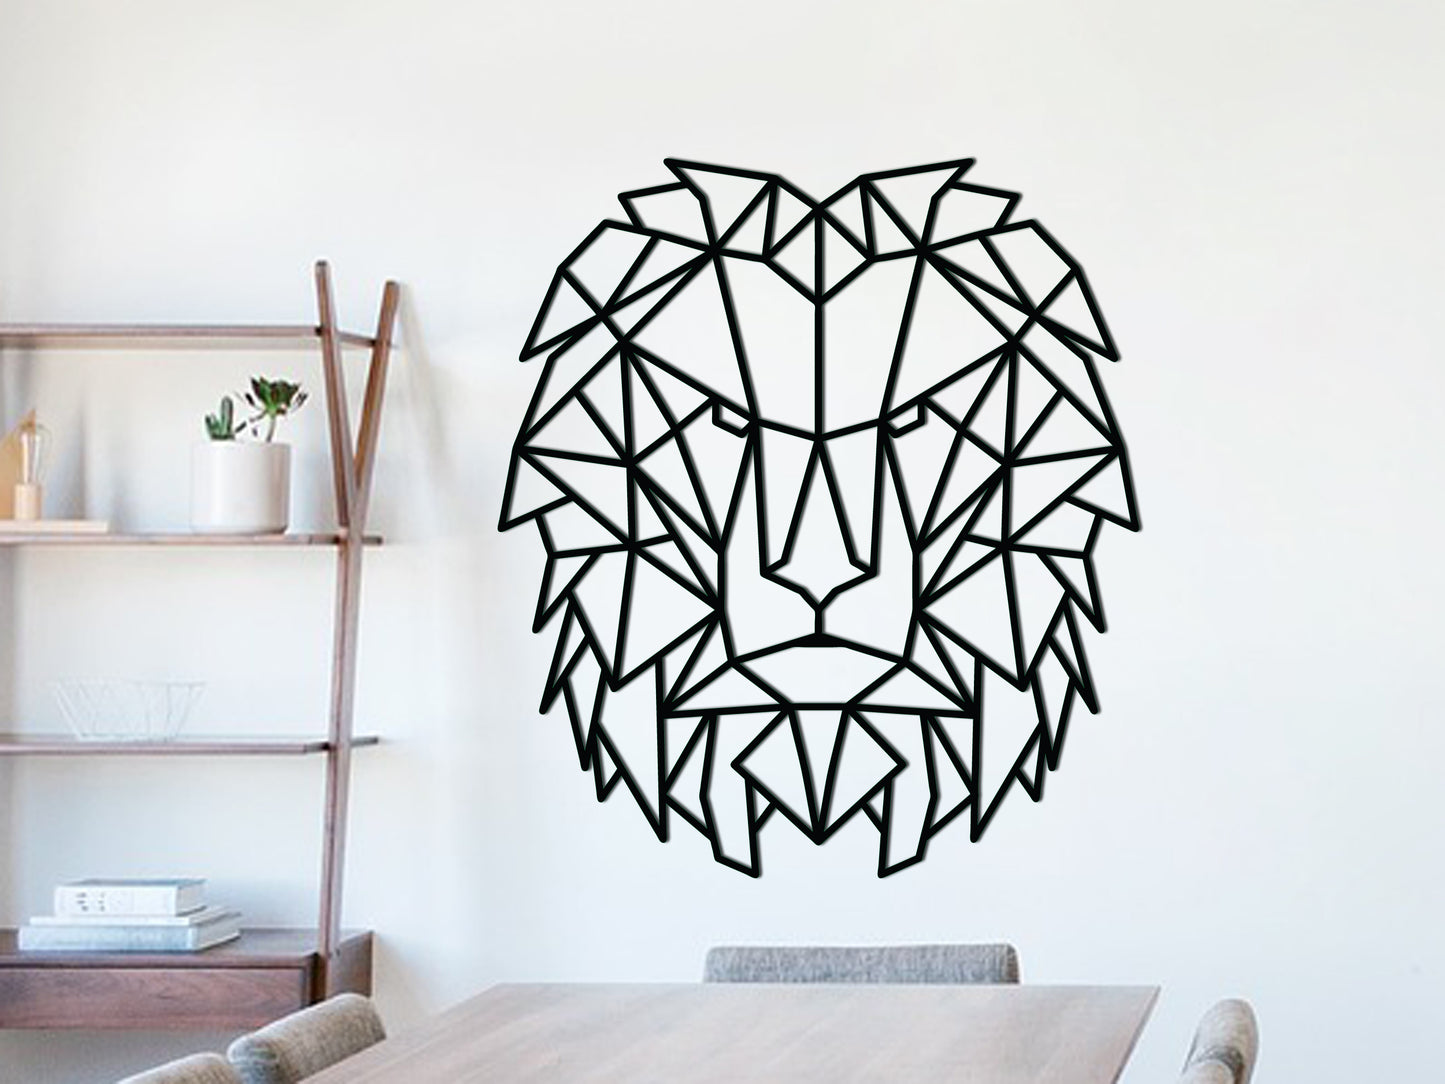 Houten wanddecoratie - Geometrische Leeuw